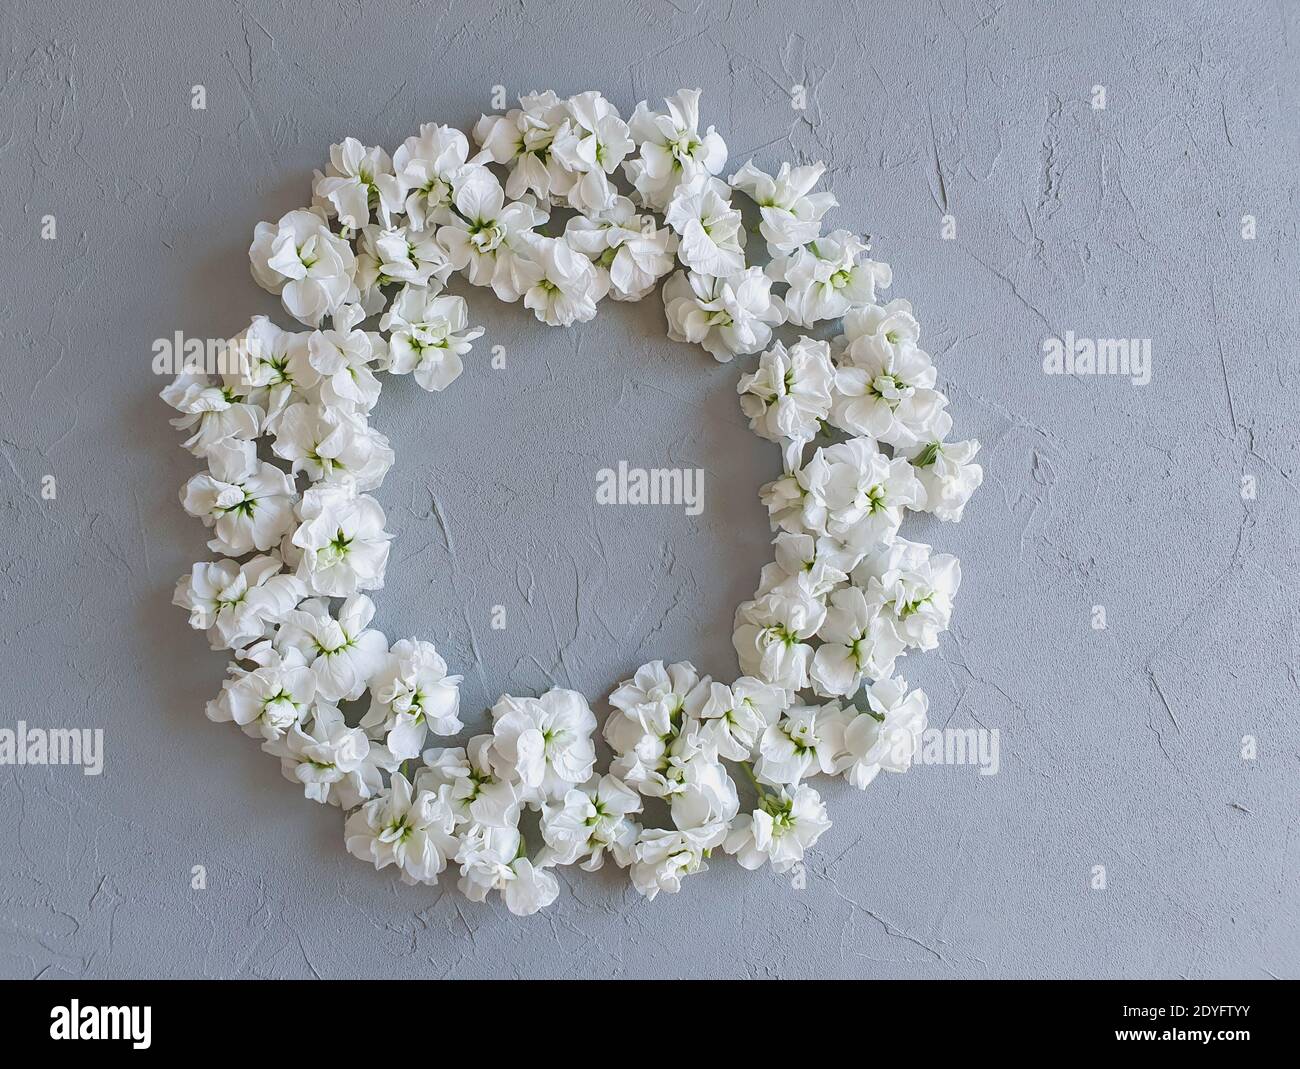 Blumenrahmen mit kleinen weißen Blumen auf einem grauen Betongrund. Betonstruktur und blühende Blütenknospen. Dies ist der Ort für Ihre Schönheit prod Stockfoto